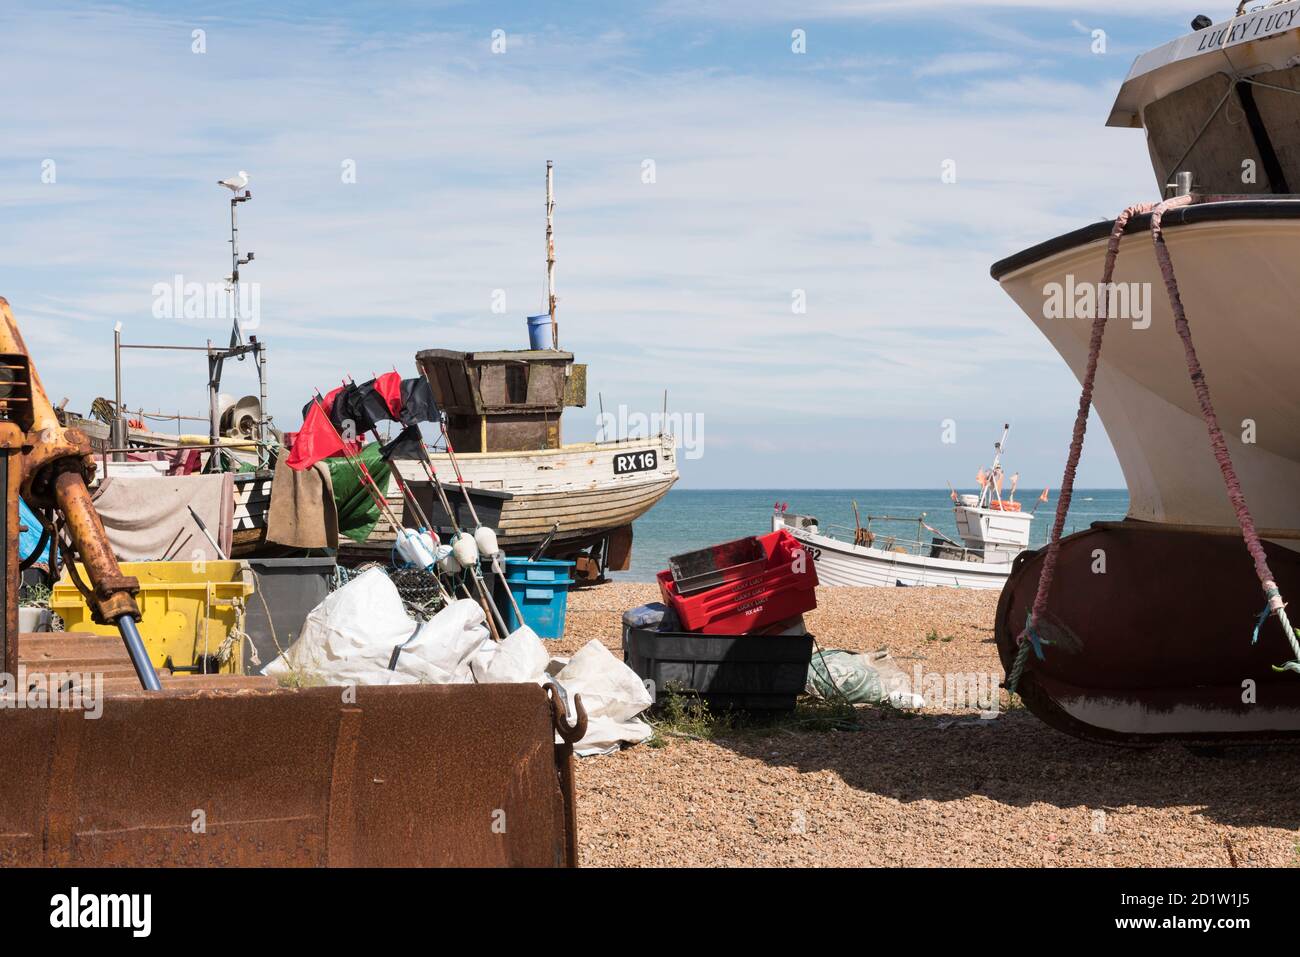 Gesamtansicht des Stade Strandes von Norden, zeigt Fischerboote und zugehörige Angelausrüstung auf dem Kiesel, The Stade, Hastings, East Sussex, UK. Stockfoto